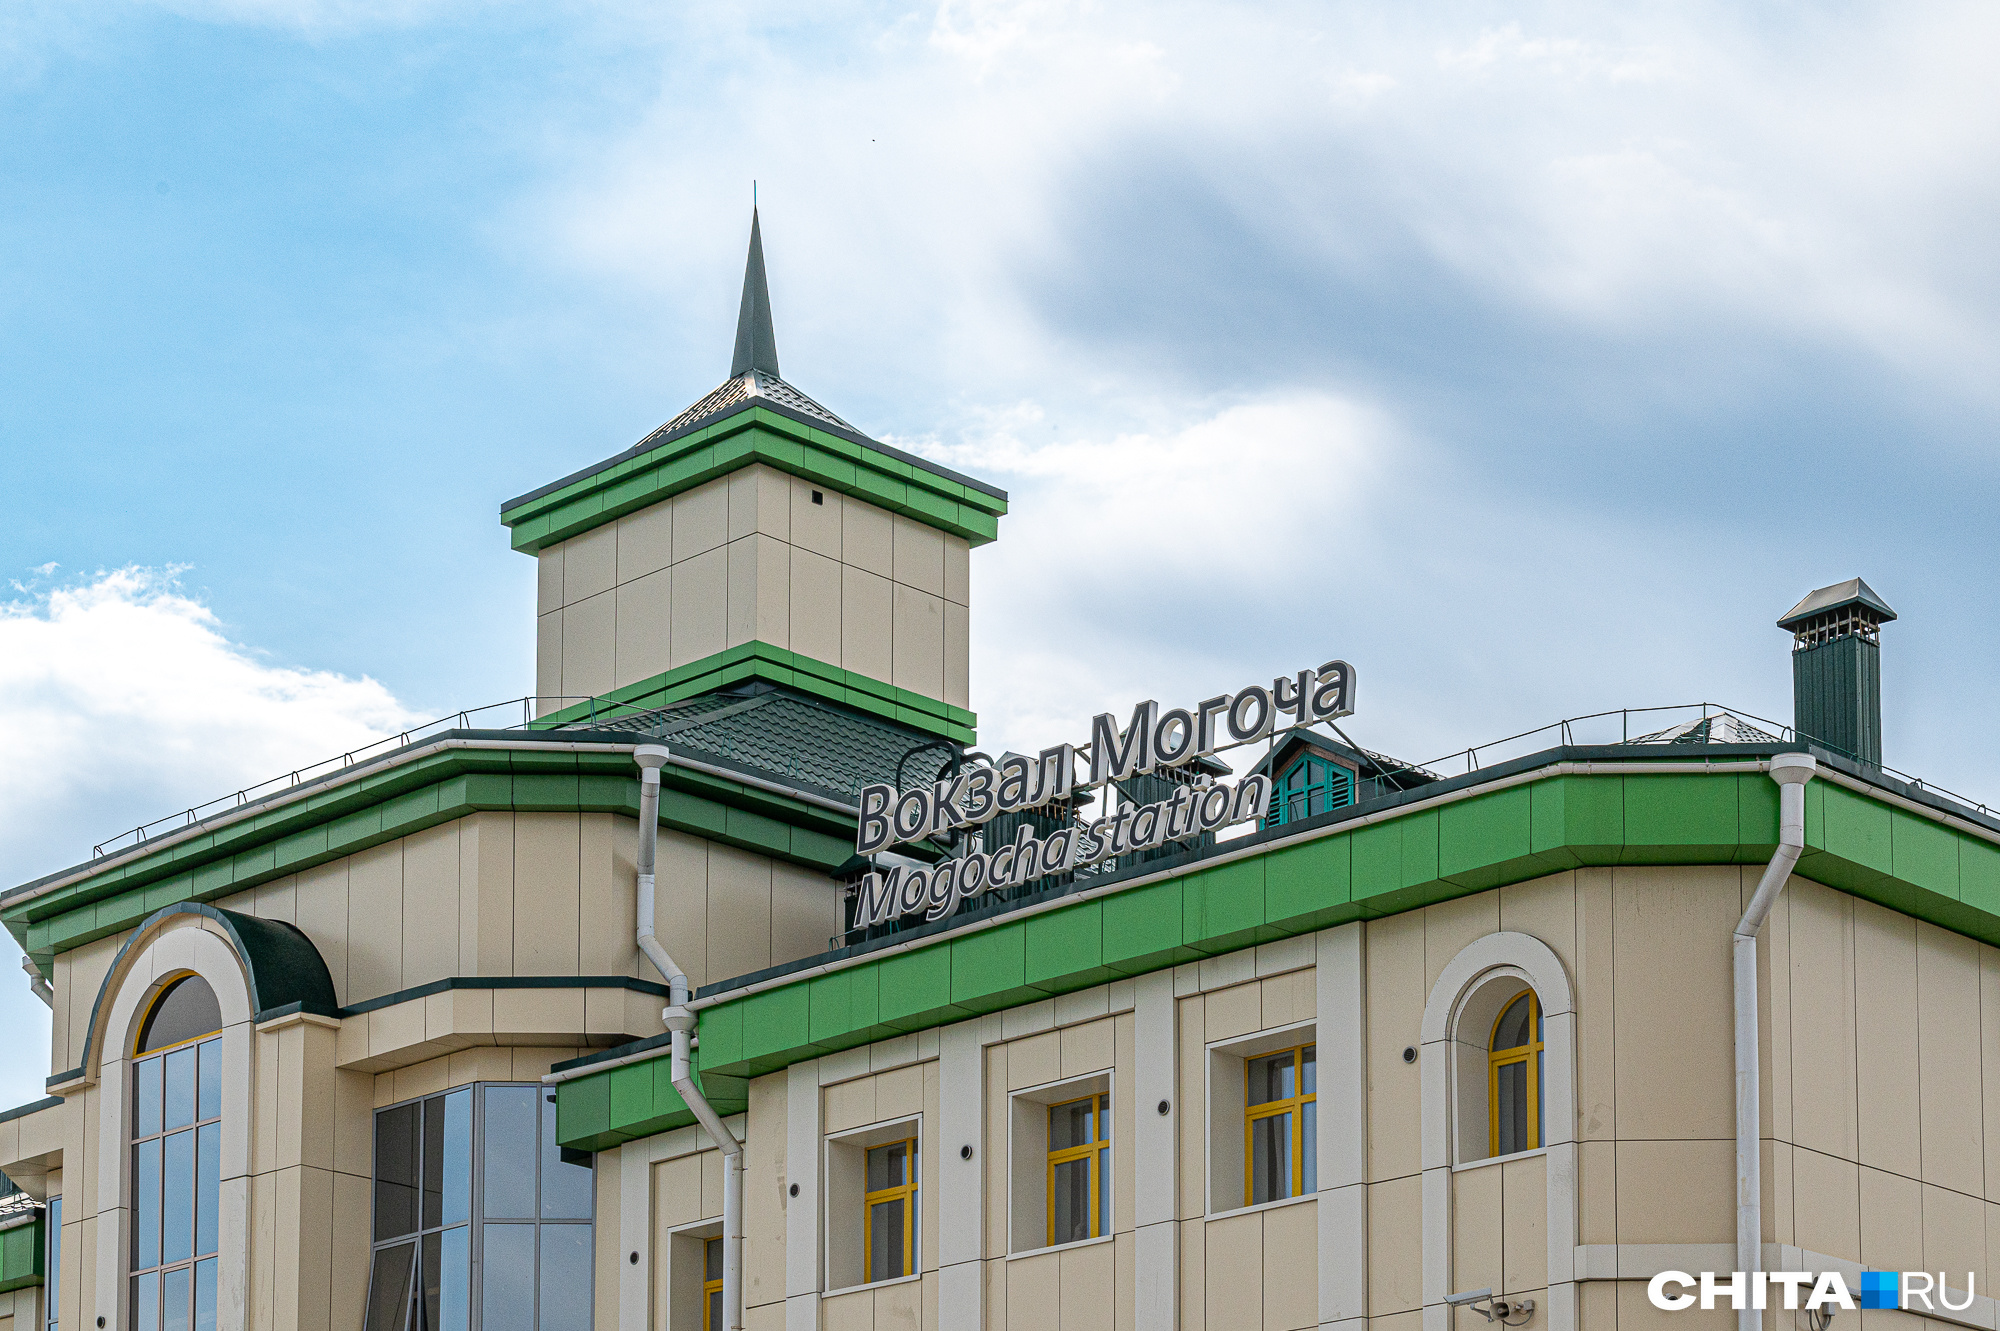 Железнодорожную станцию реконструировали в забайкальском городе Могоча